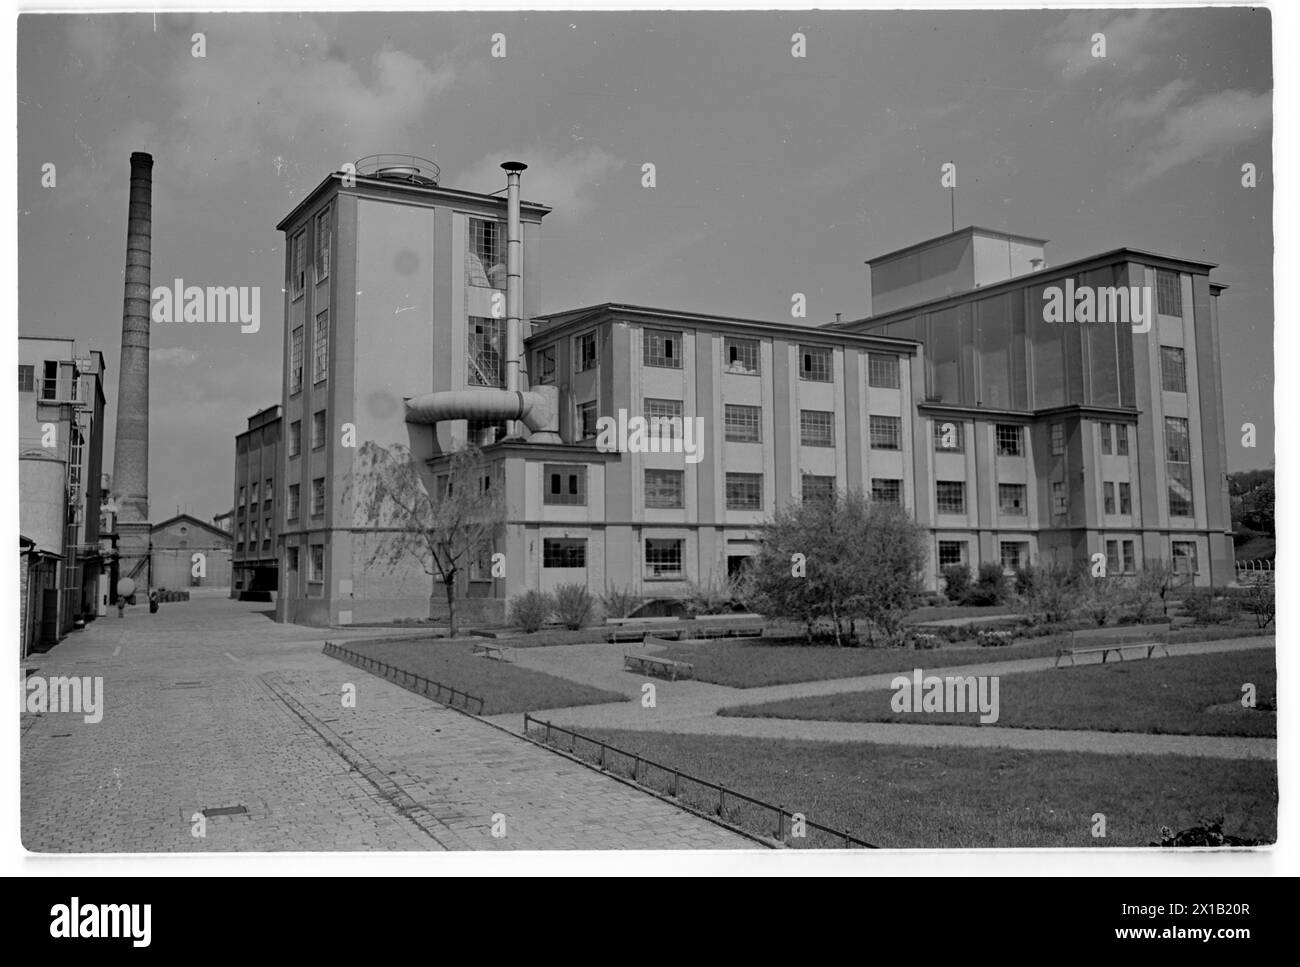 Unilever, usine de vue extérieure Simmering, 01.05.1958 - 19580501 PD0180 - Rechteinfo : droits gérés (RM) Banque D'Images